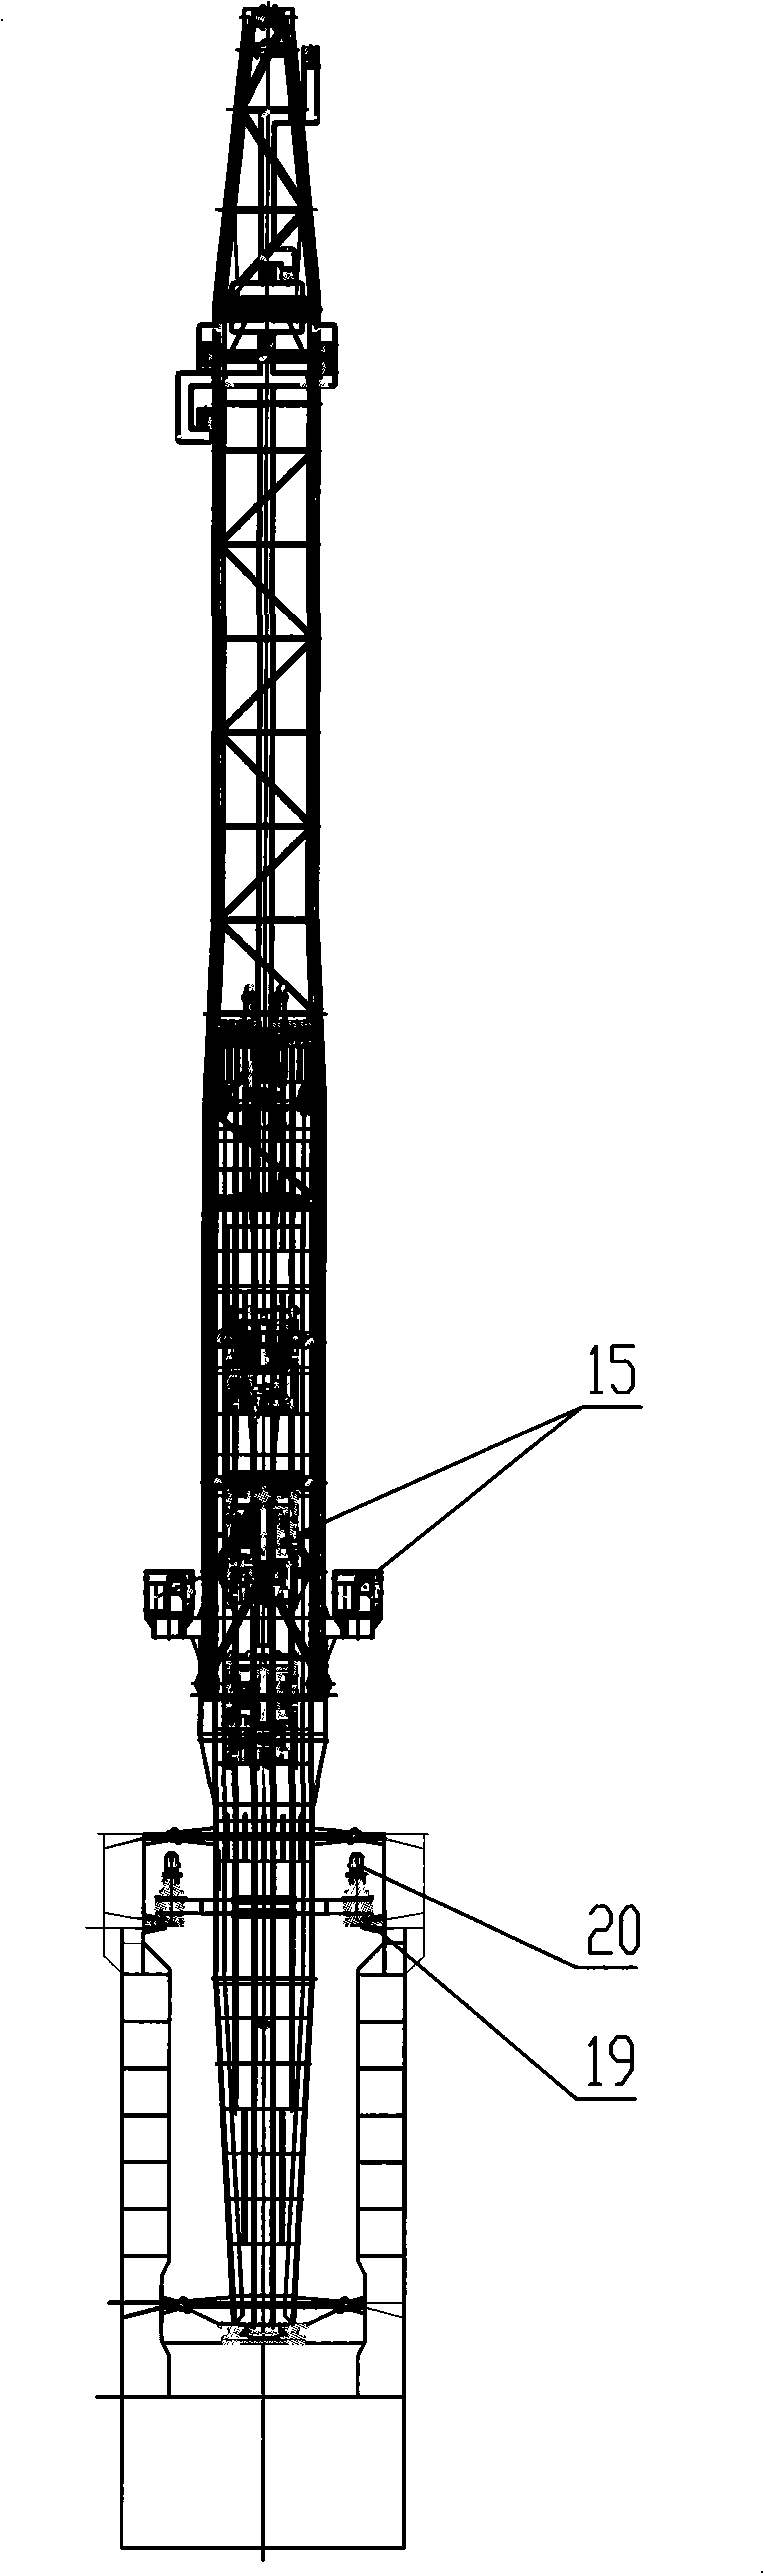 Large-scale full-turning offshore platform crane